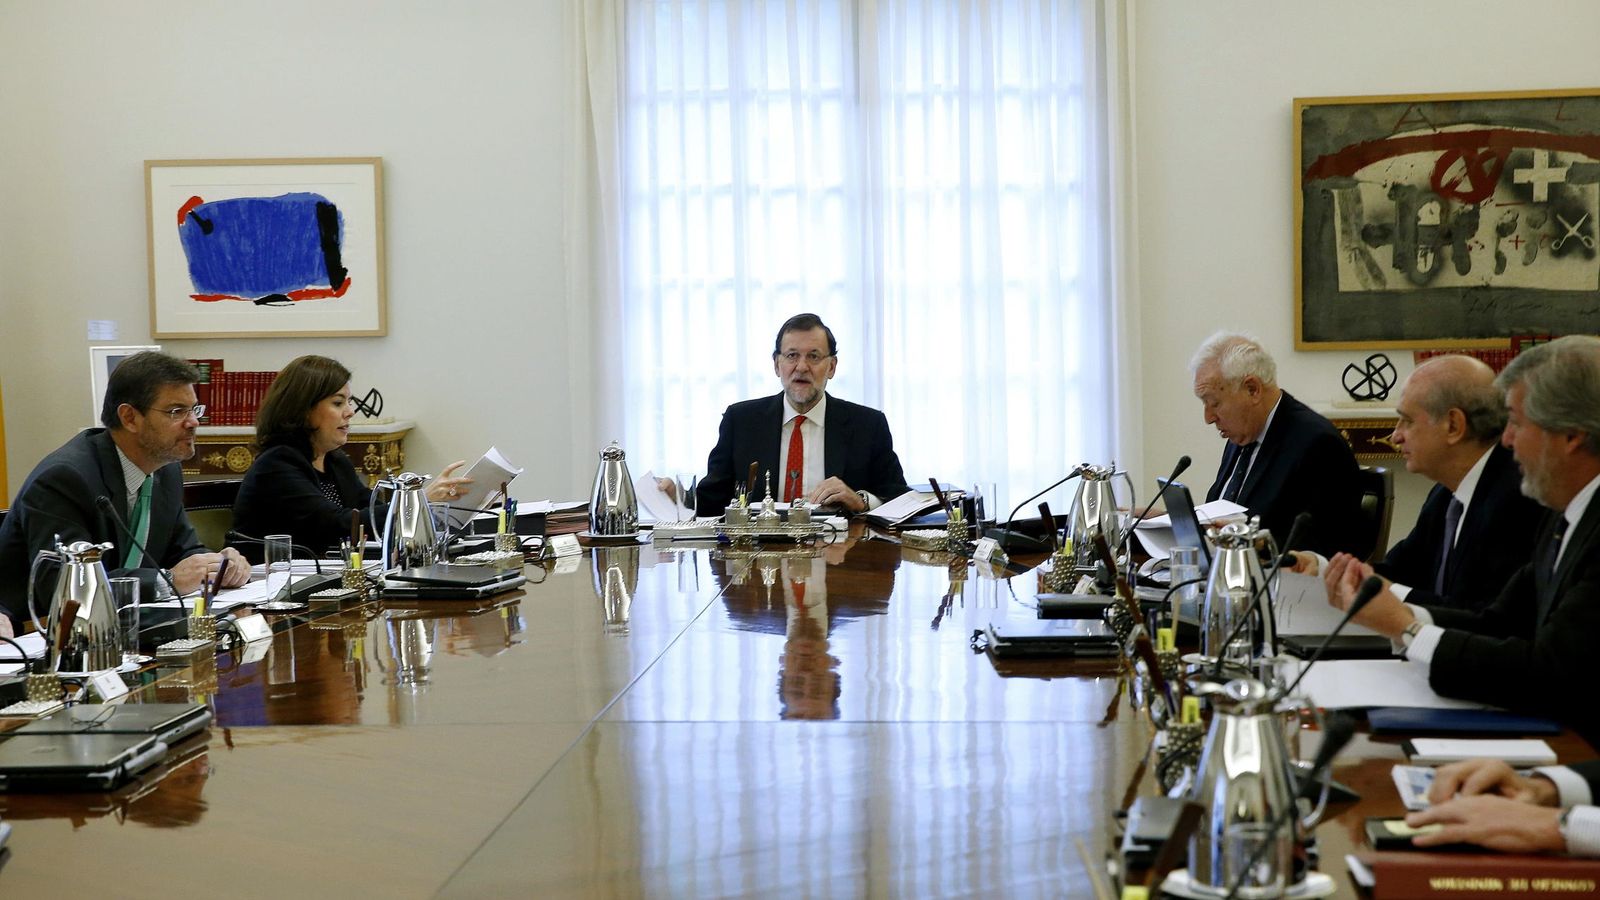 Foto: El presidente del Gobierno, Mariano Rajoy, durante una reunión extraordinaria del Consejo de Ministros, celebrado en en el palacio de La Moncloa. (Efe)